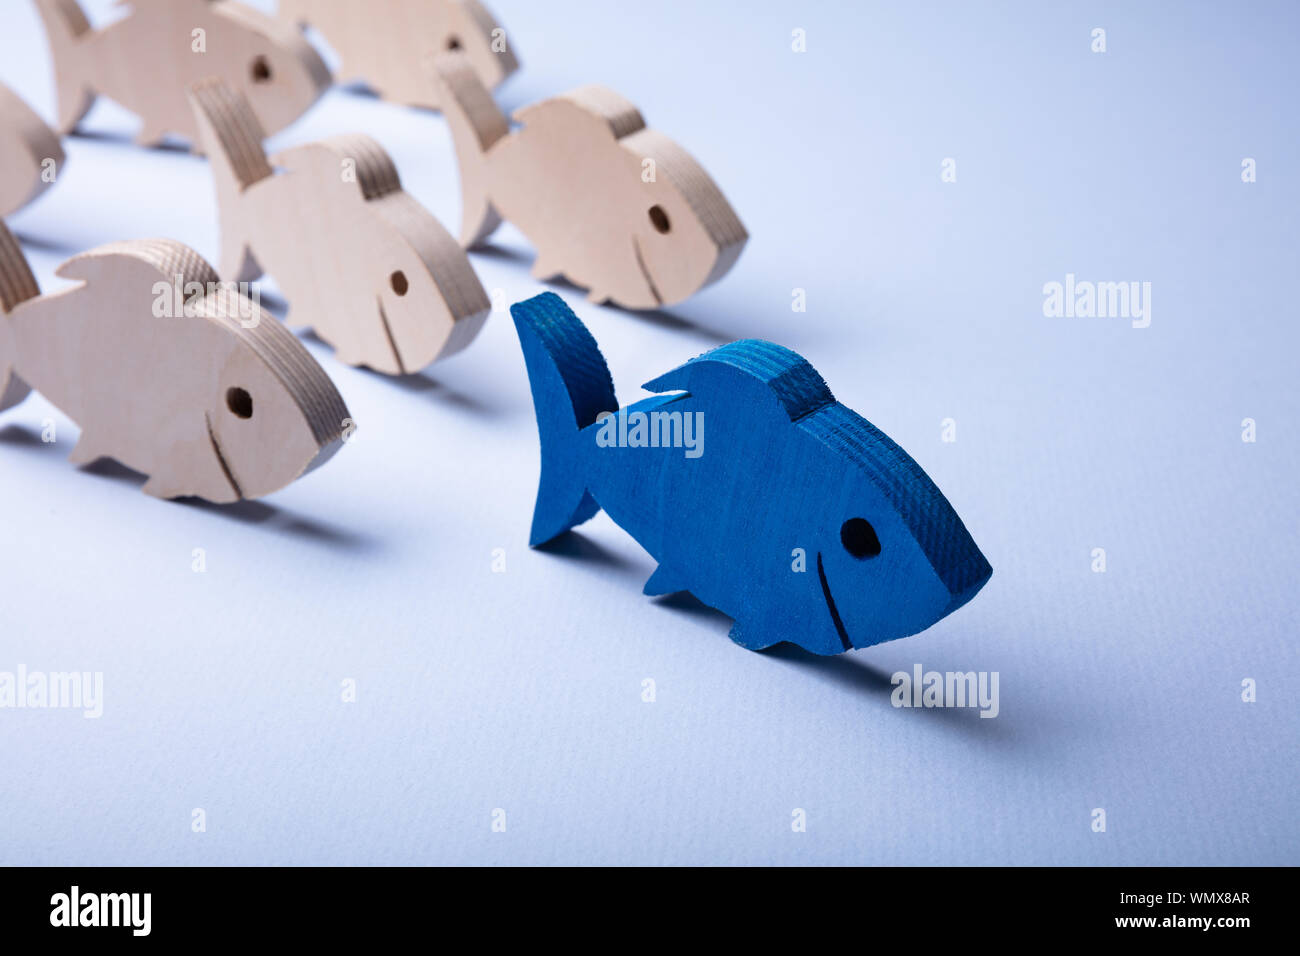 Pesci finti immagini e fotografie stock ad alta risoluzione - Alamy